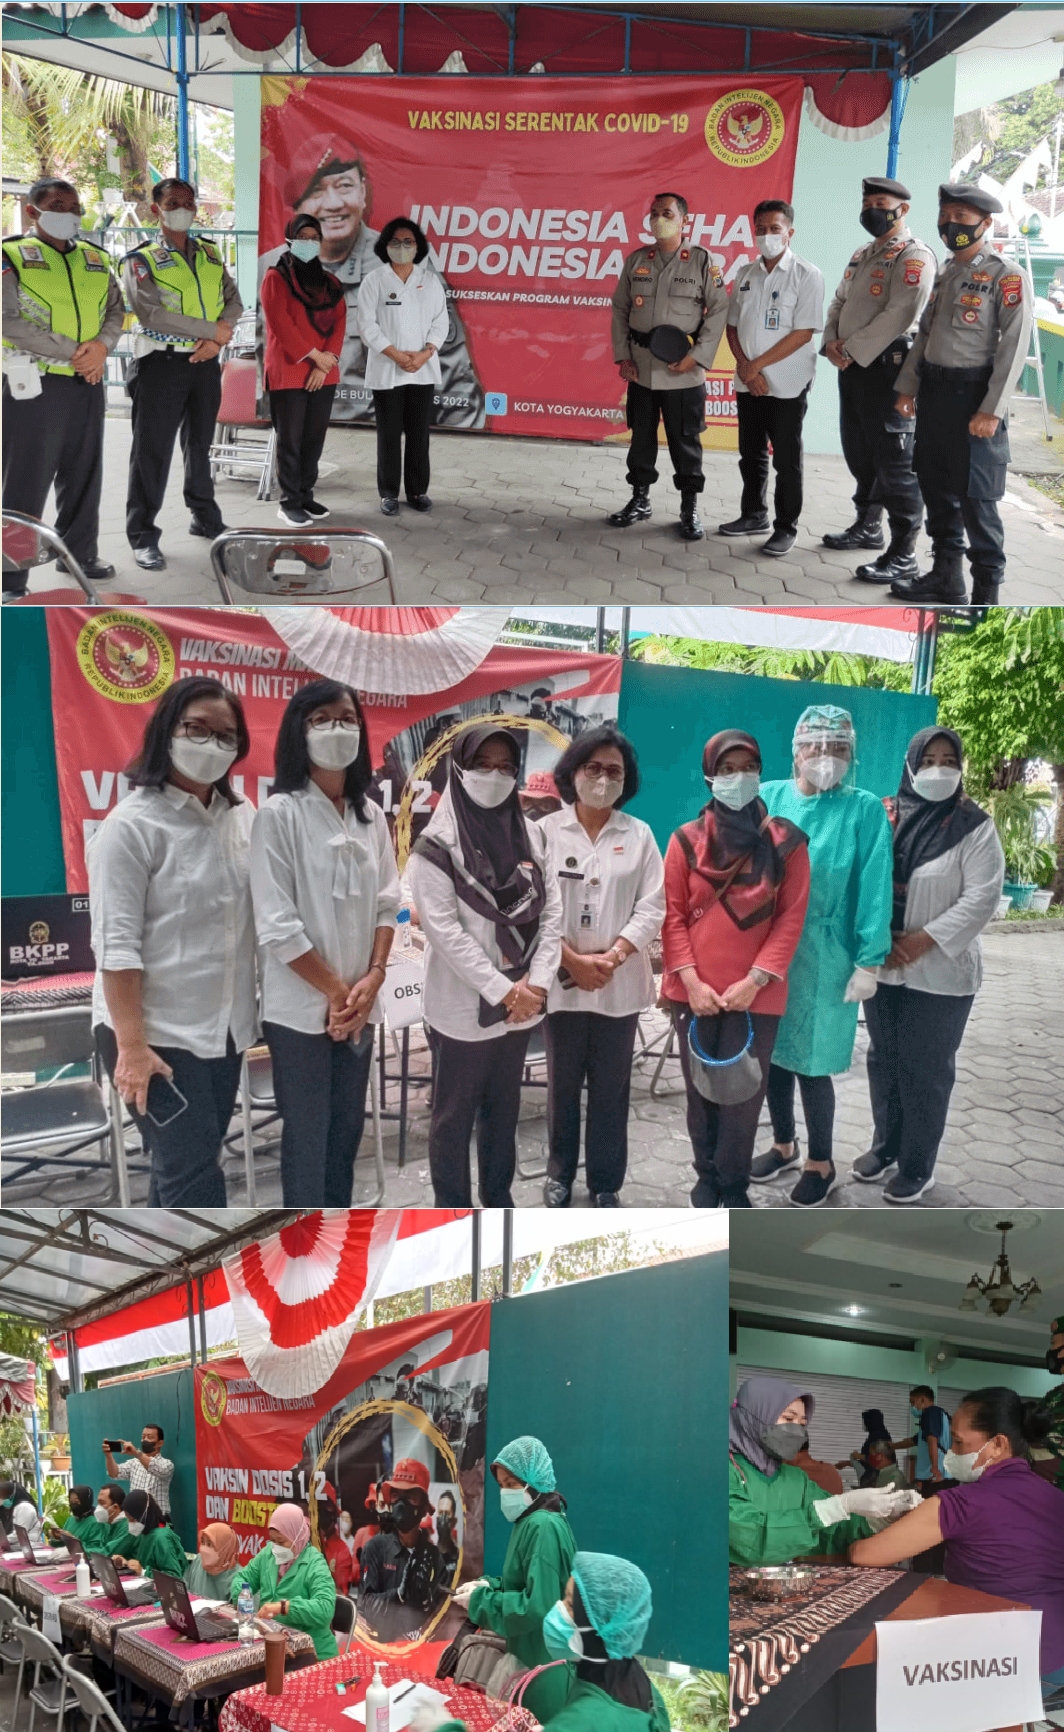 Vaksinasi Booster Ke-3 COVID19 Dinas Kesehatan Kota Yogyakarta di Kemantren Ngampilan